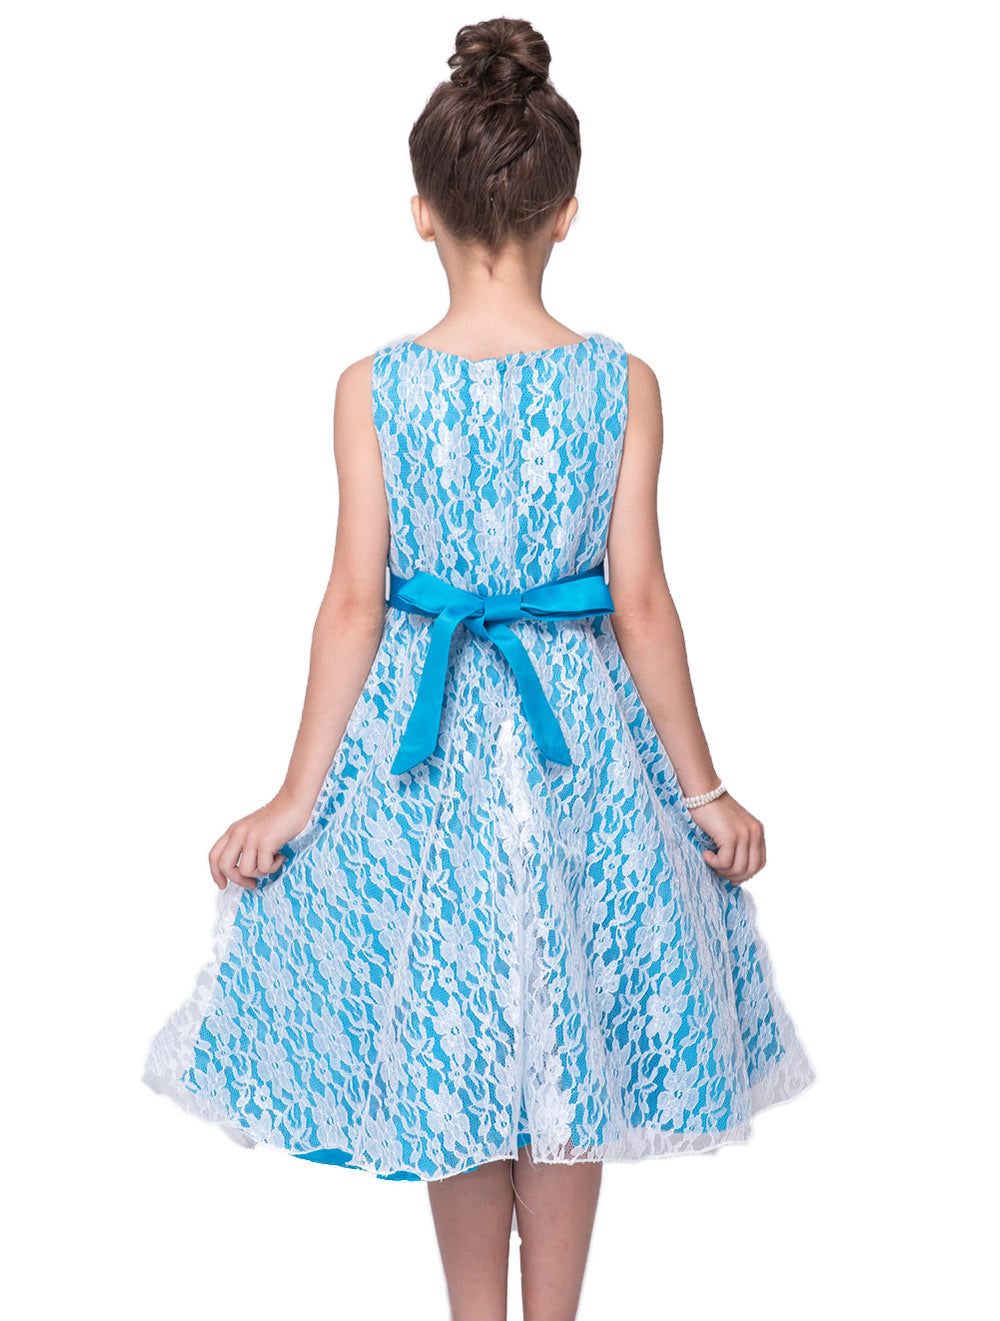 Blue Lace Sleeveless Dress, Size 4-14 Yrs